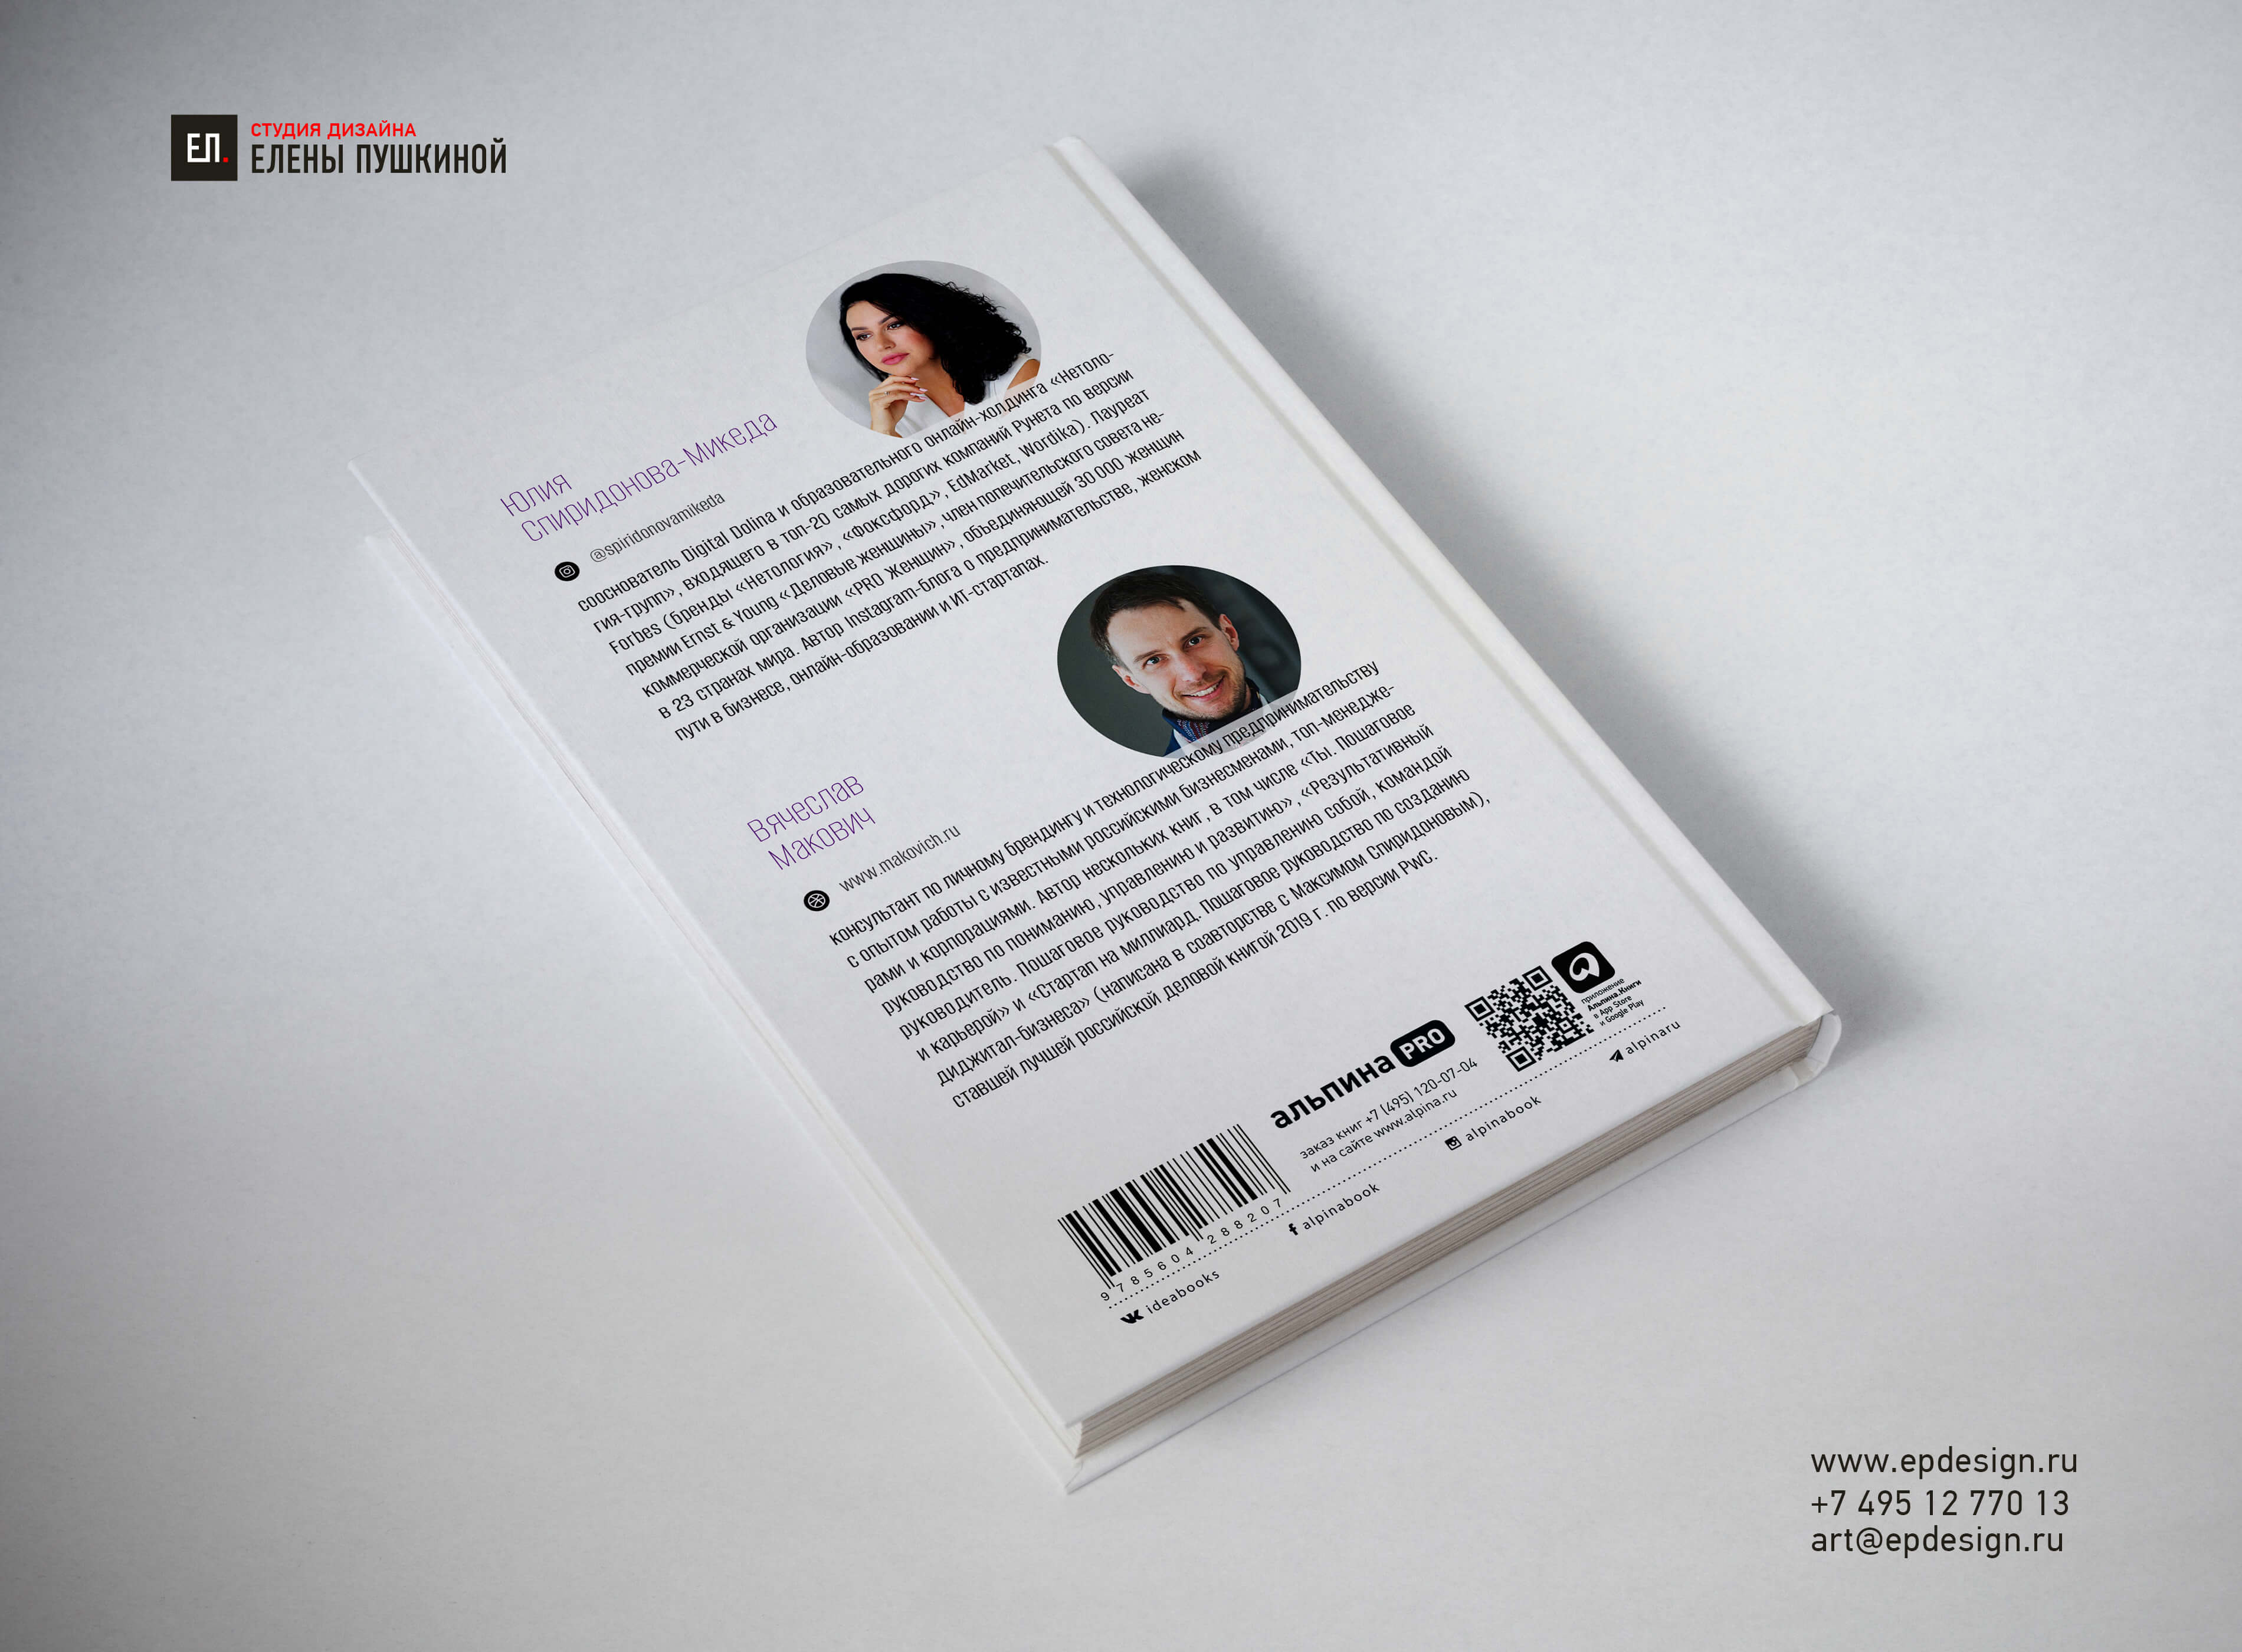 Создание дизайна обложки книги «Личный бренд, который работает на вас. Пошаговое руководство» Создание книг Портфолио